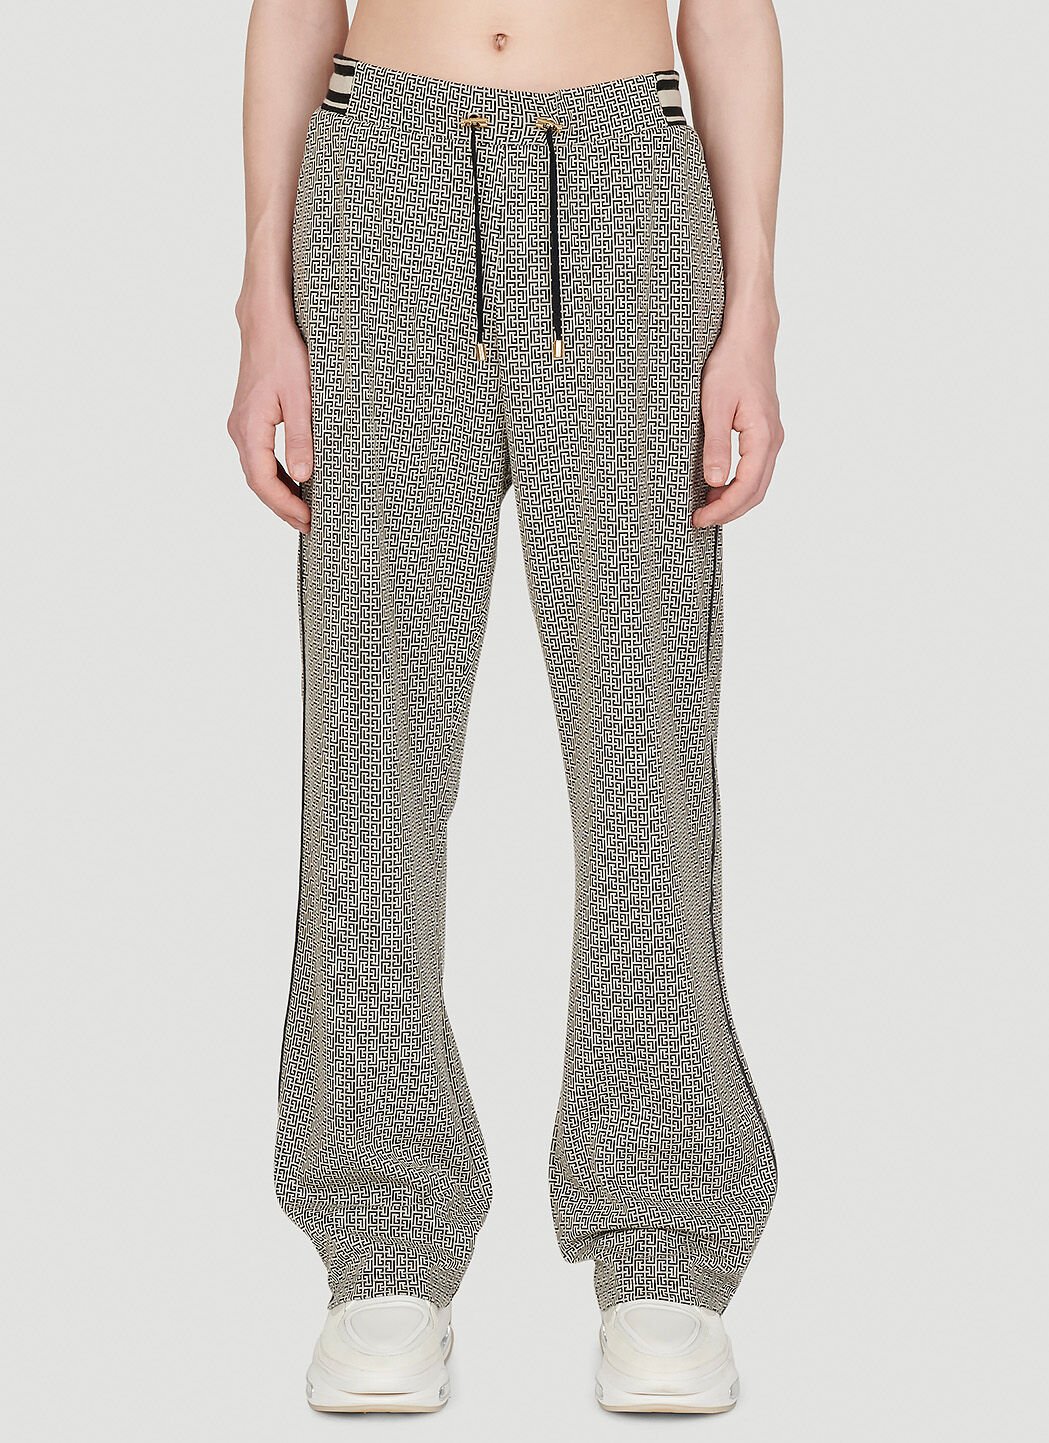 Balmain Mini Monogram Jacquard Pyjama Pants White bln0152008